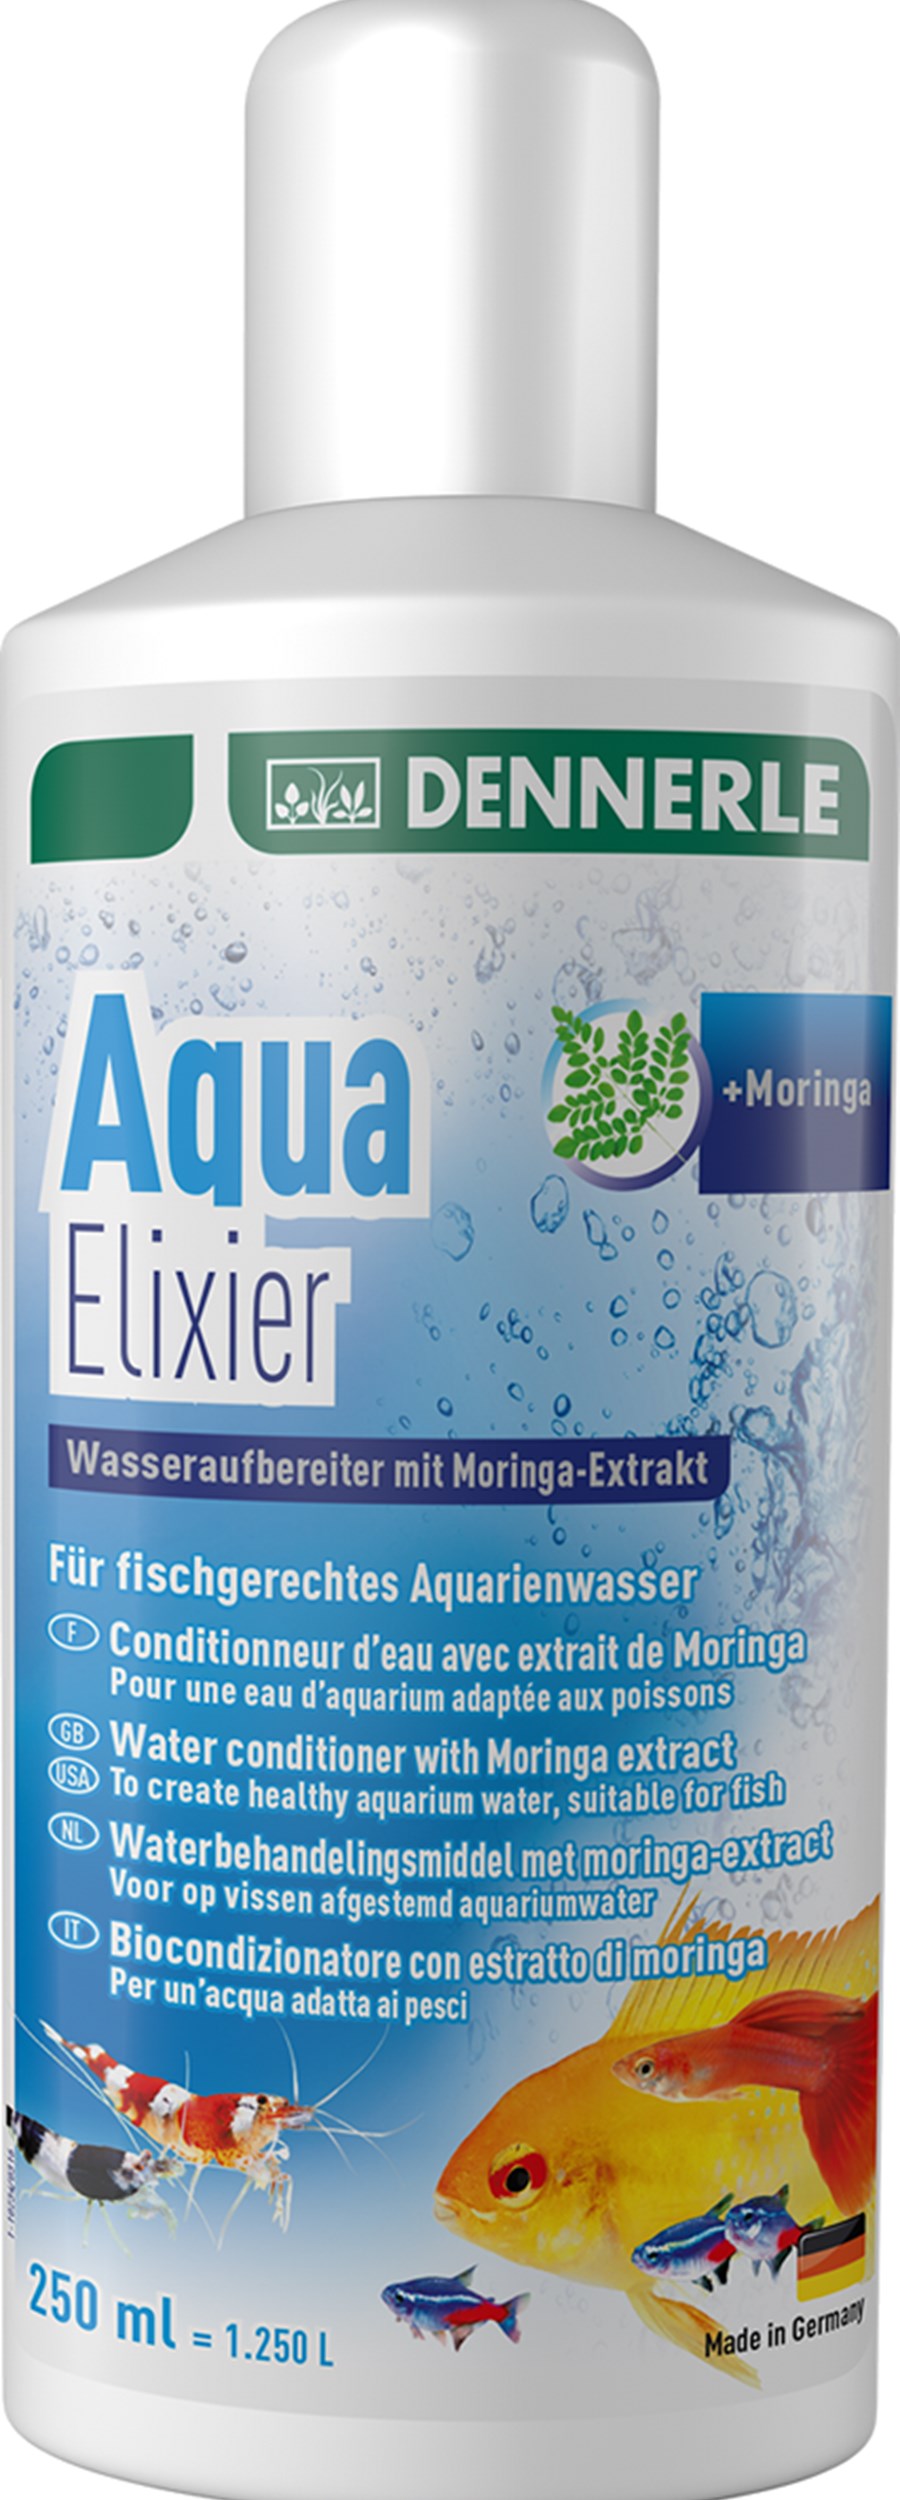 Aqua Elixier 250 ml pour 1250 litres